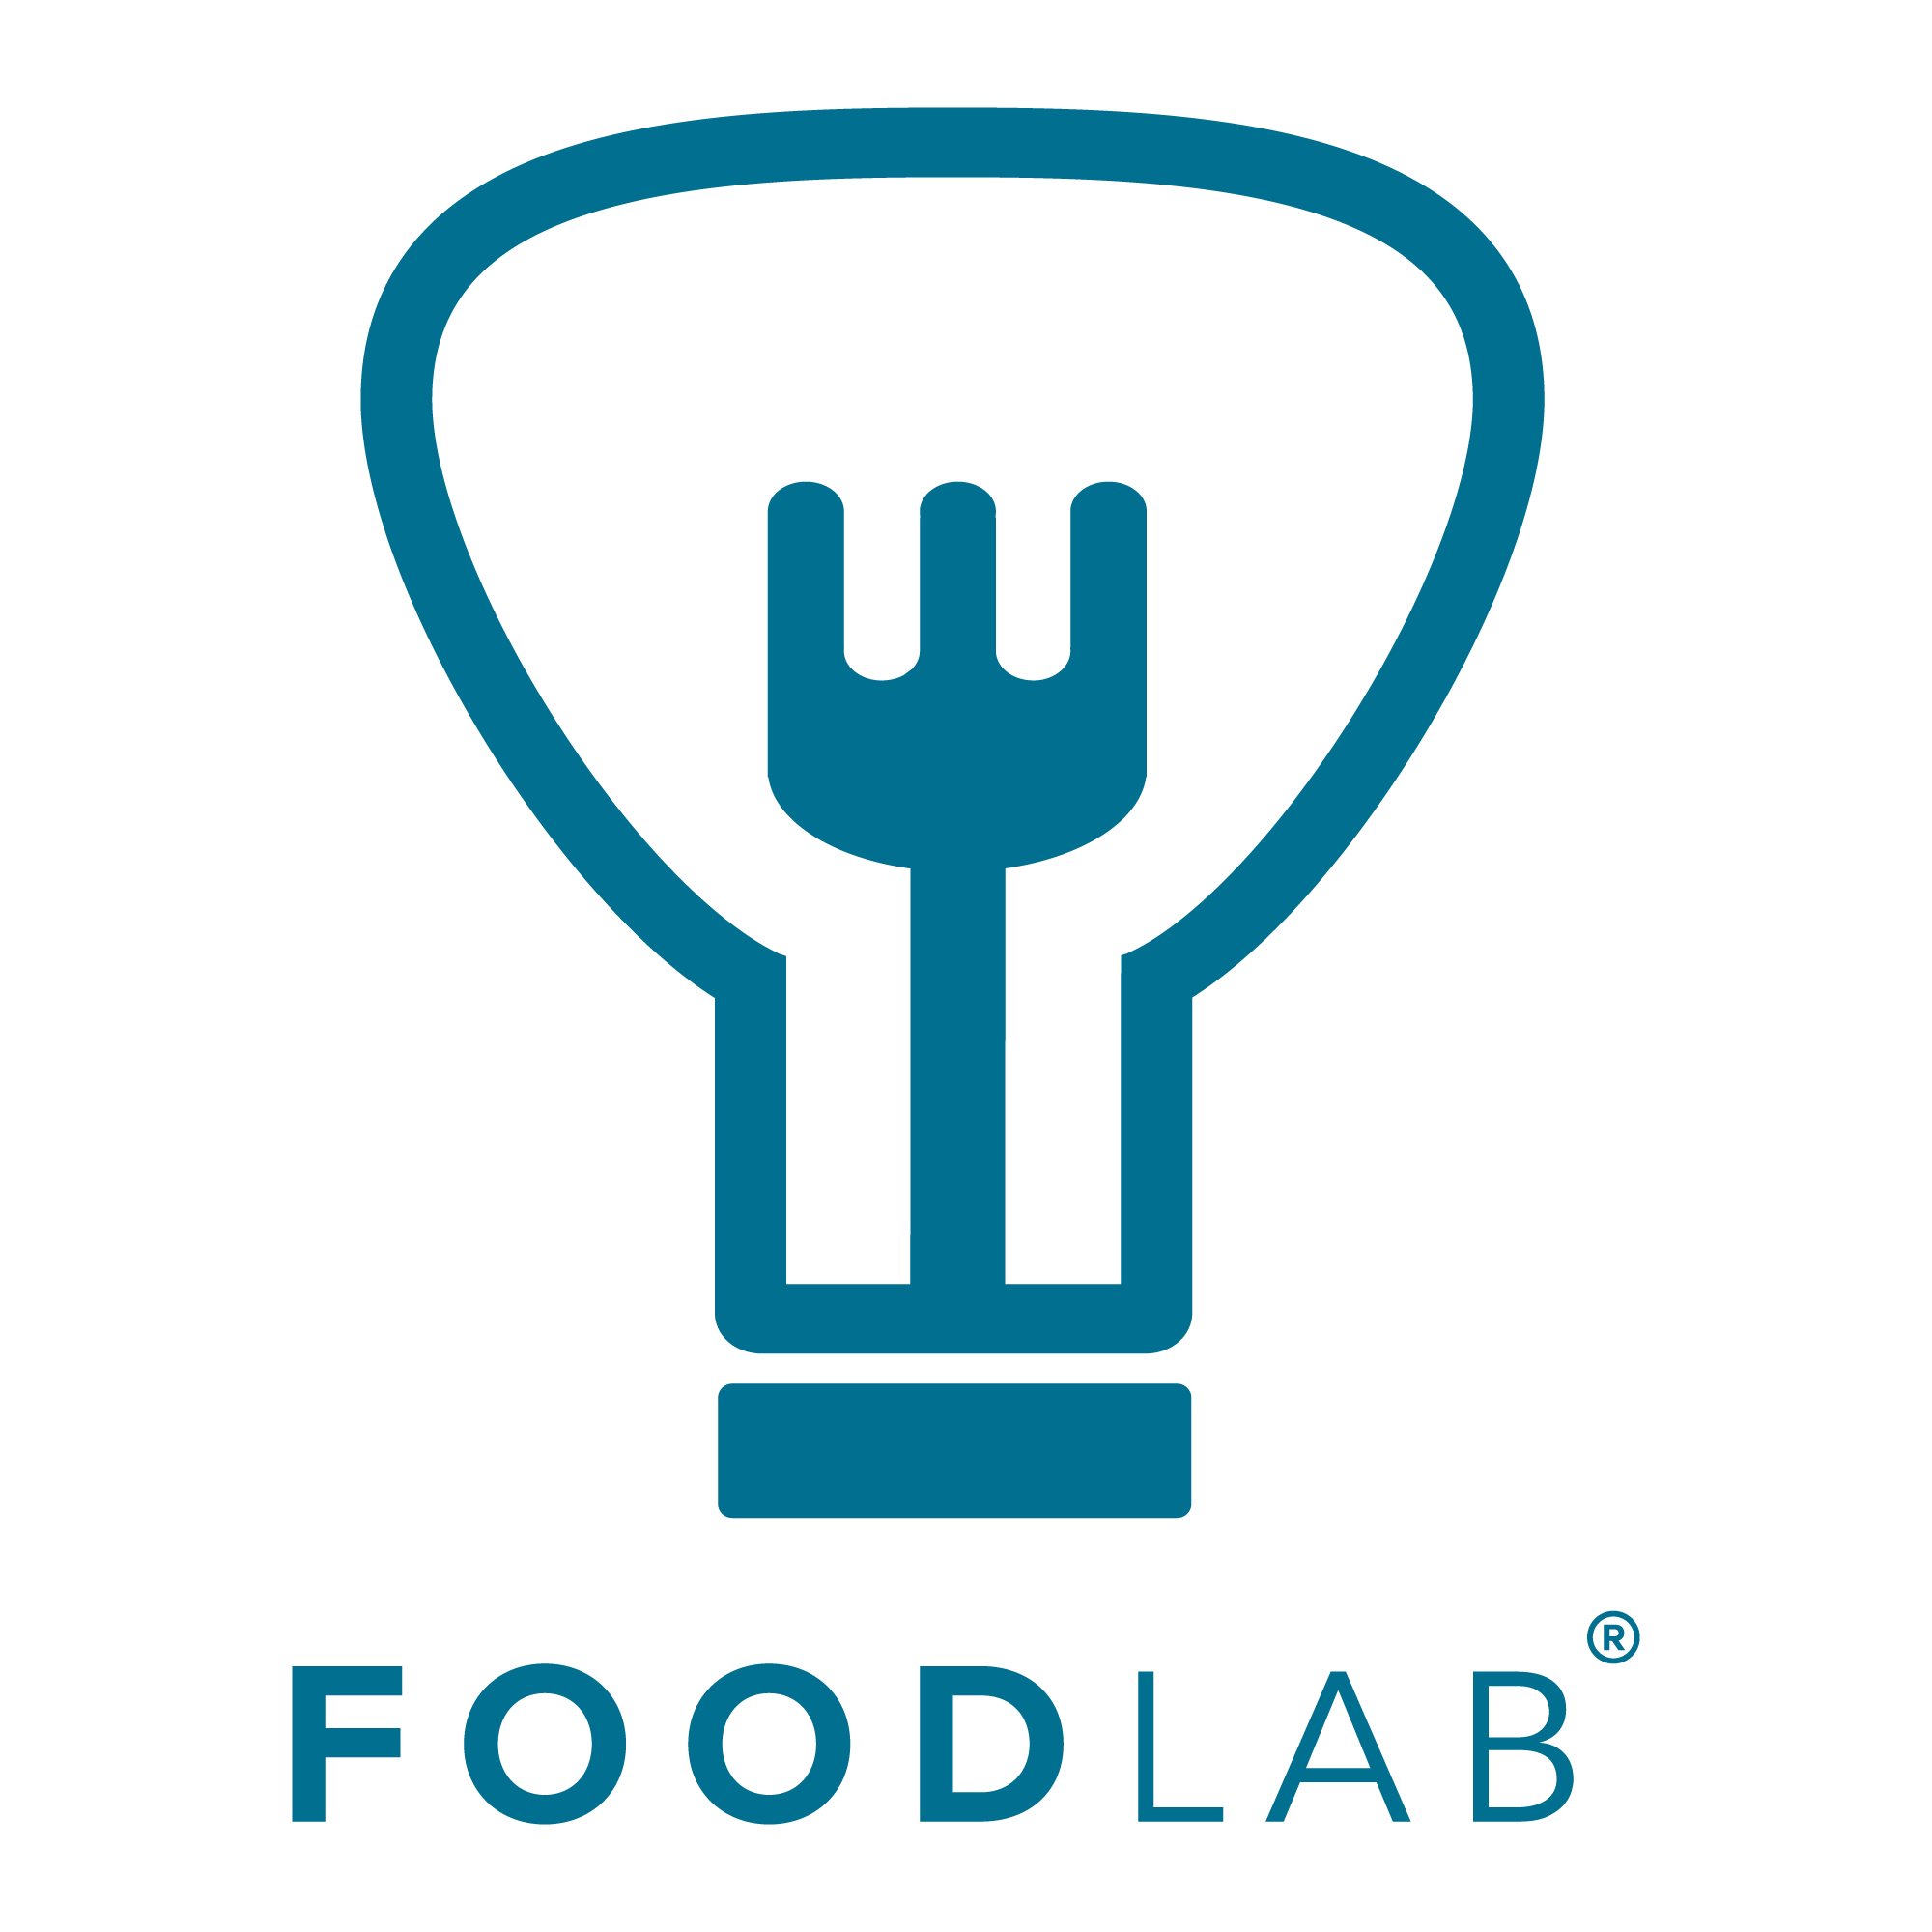 Foodlab logo blue